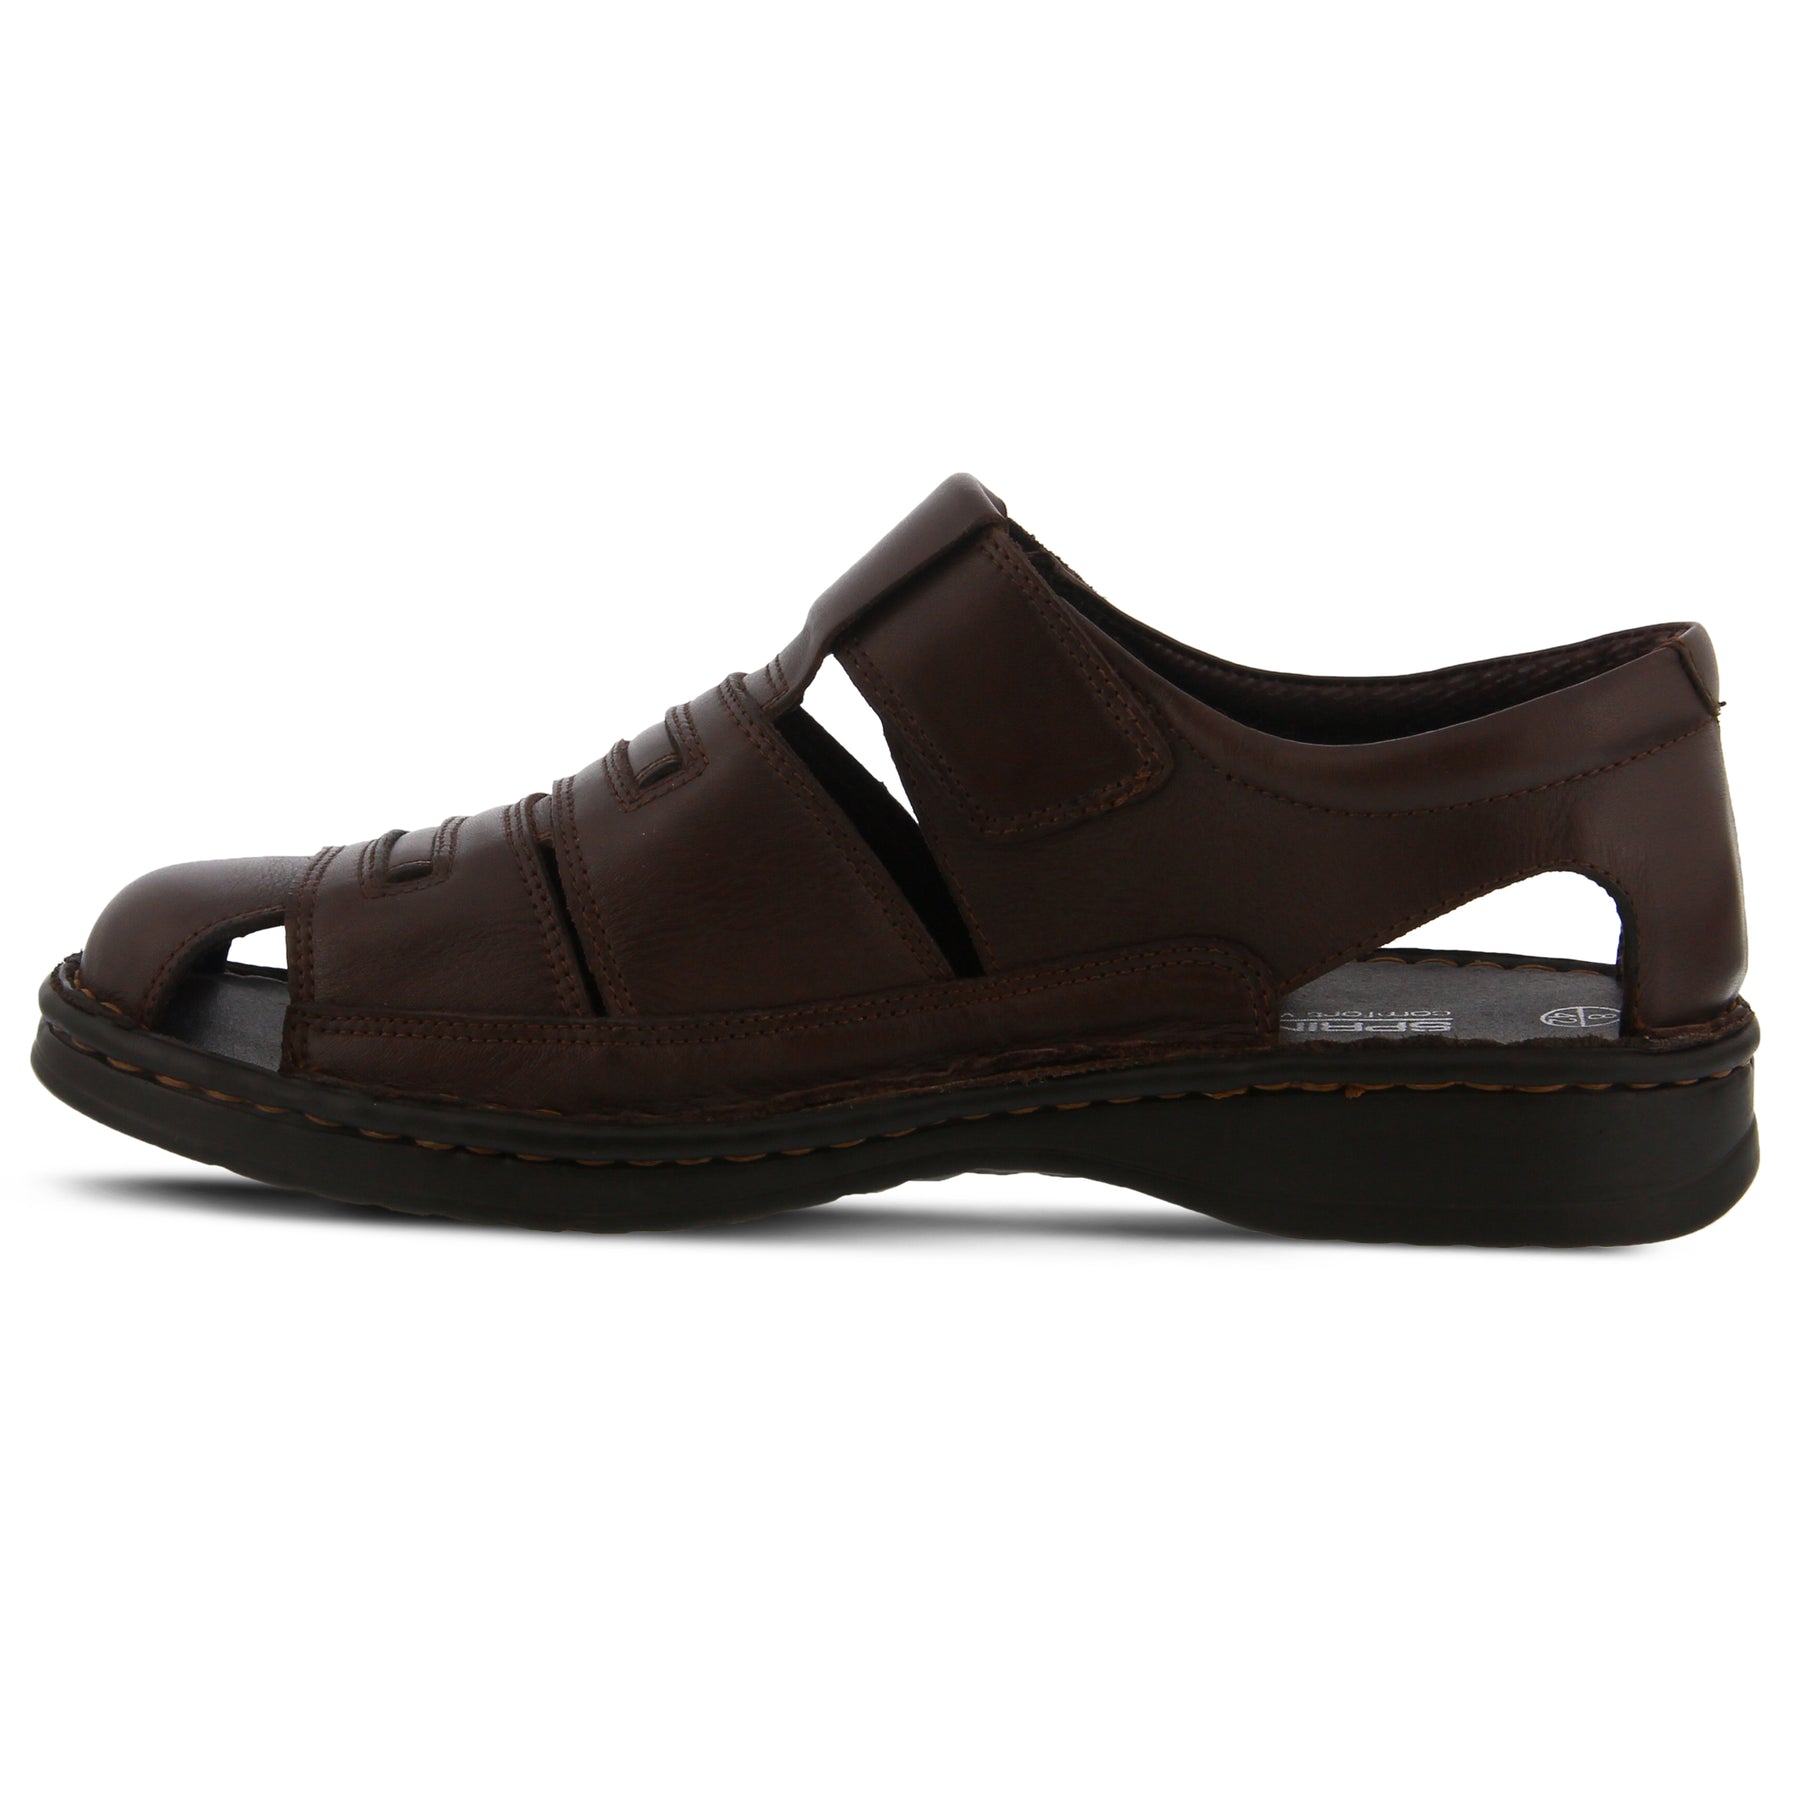 BLACK EDVARD MEN'S SLIP-ON SHOE by SPRING STEP MEN – Spring Step Shoes